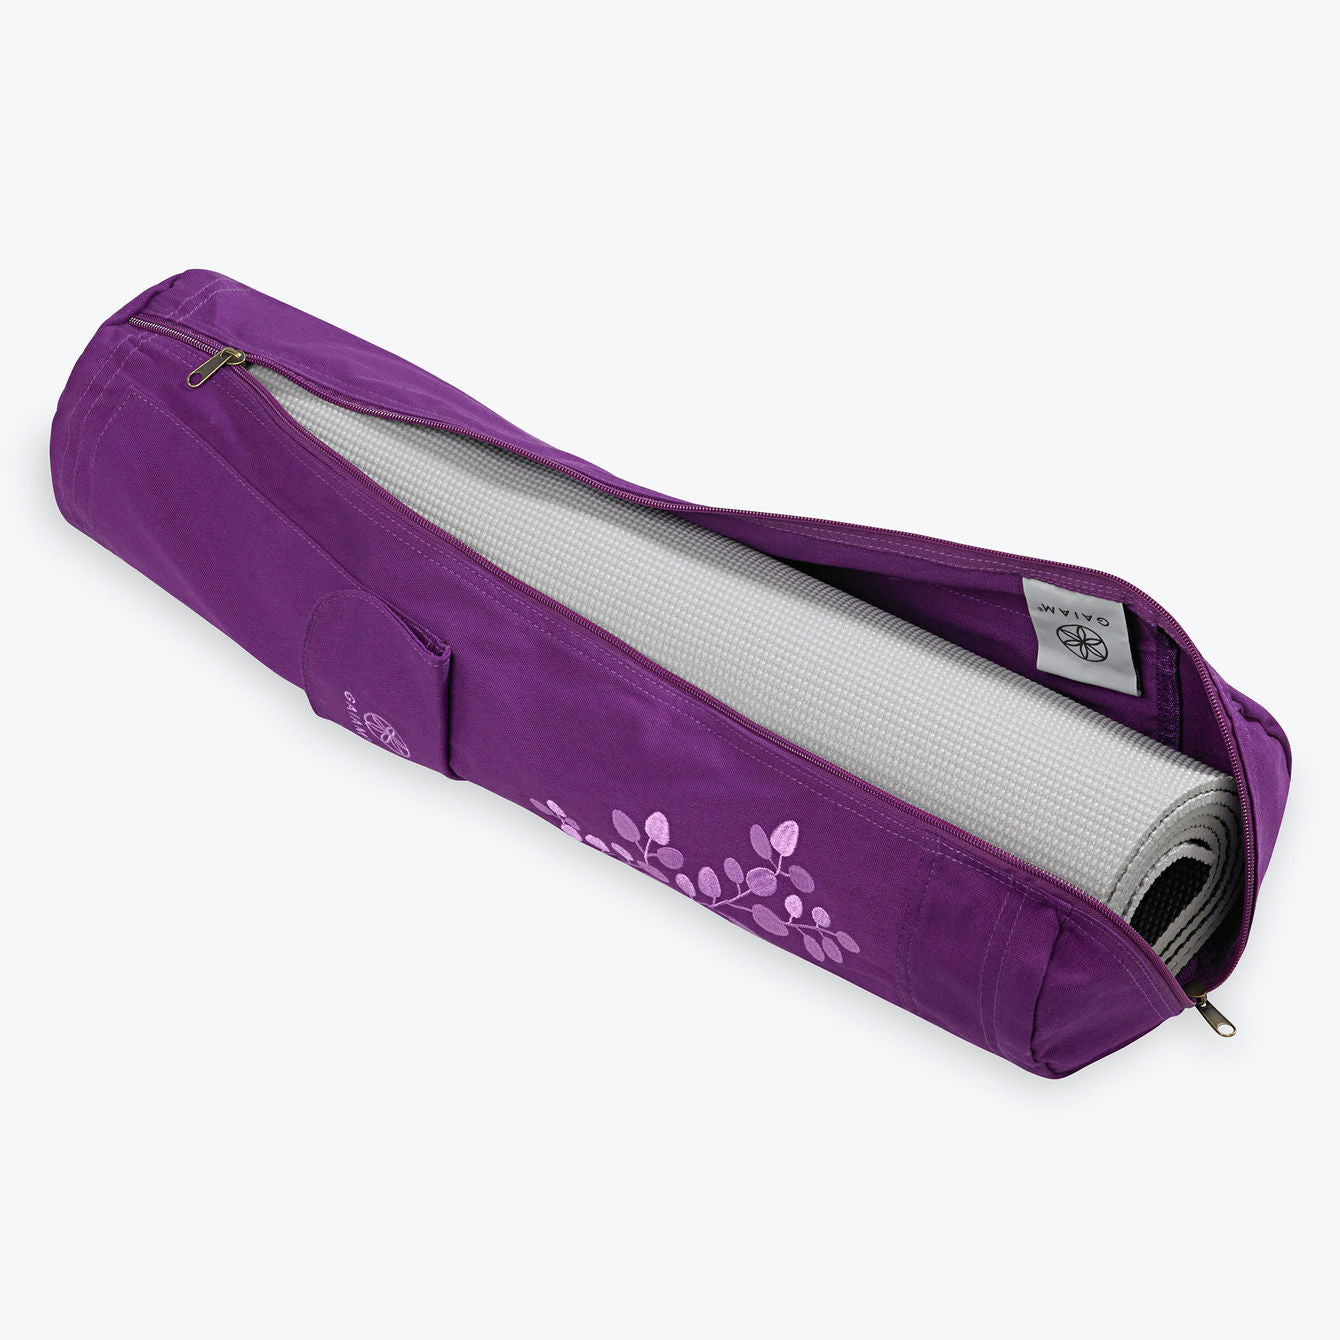 Yoga Mat Bag, Ginsco Bag Carrier with Adjustable One Size, Violet